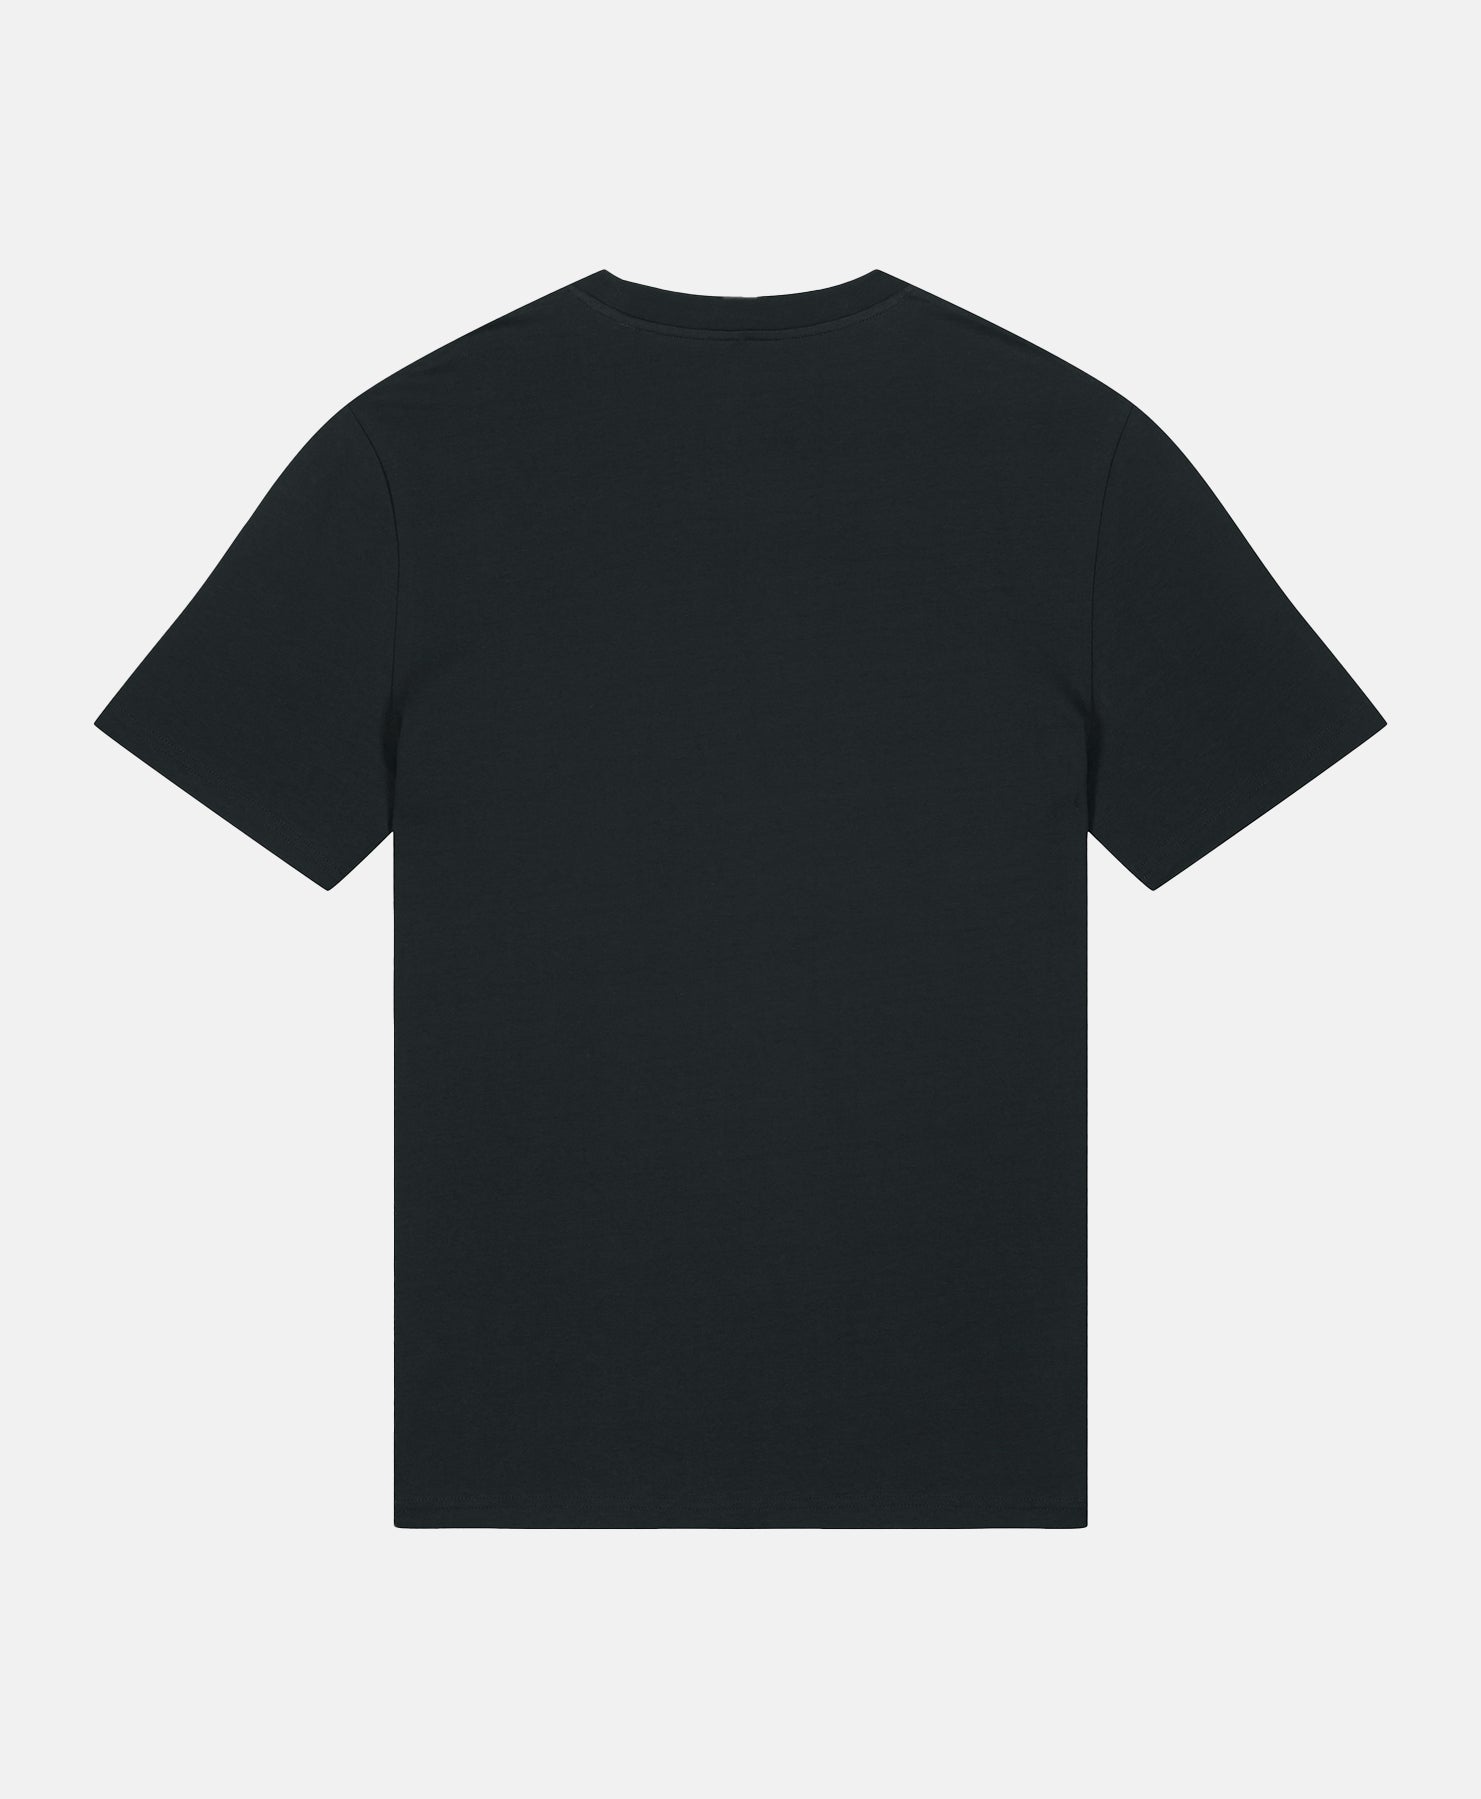 French Bulldog T-Shirt Black